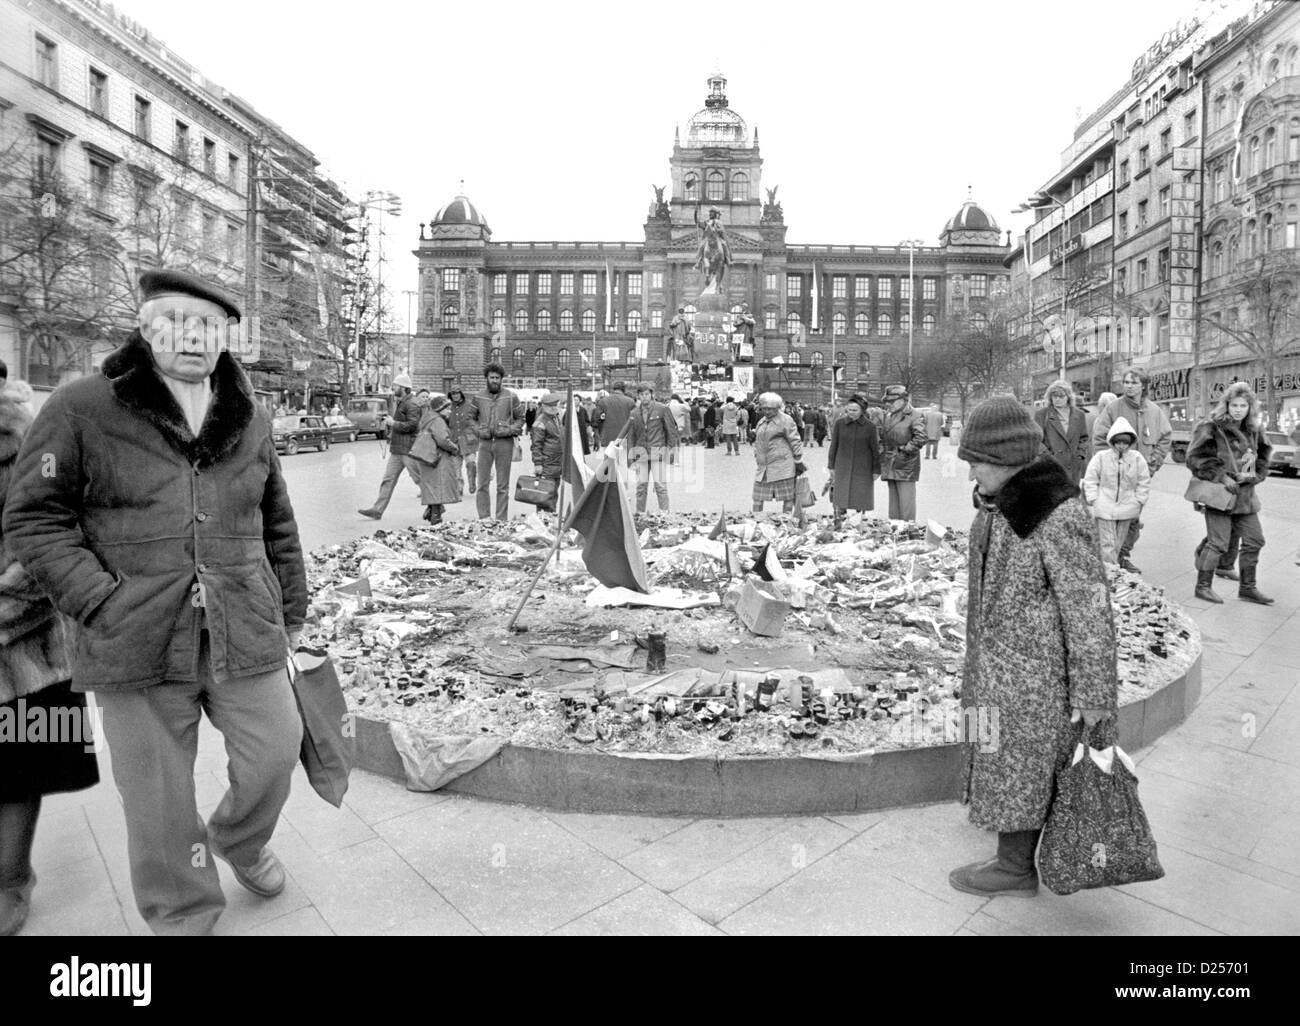 Novembre 1989 Révolution de Velours. Scène de rue de la place Venceslas. Le jour après la chute du gouvernement communiste. Banque D'Images